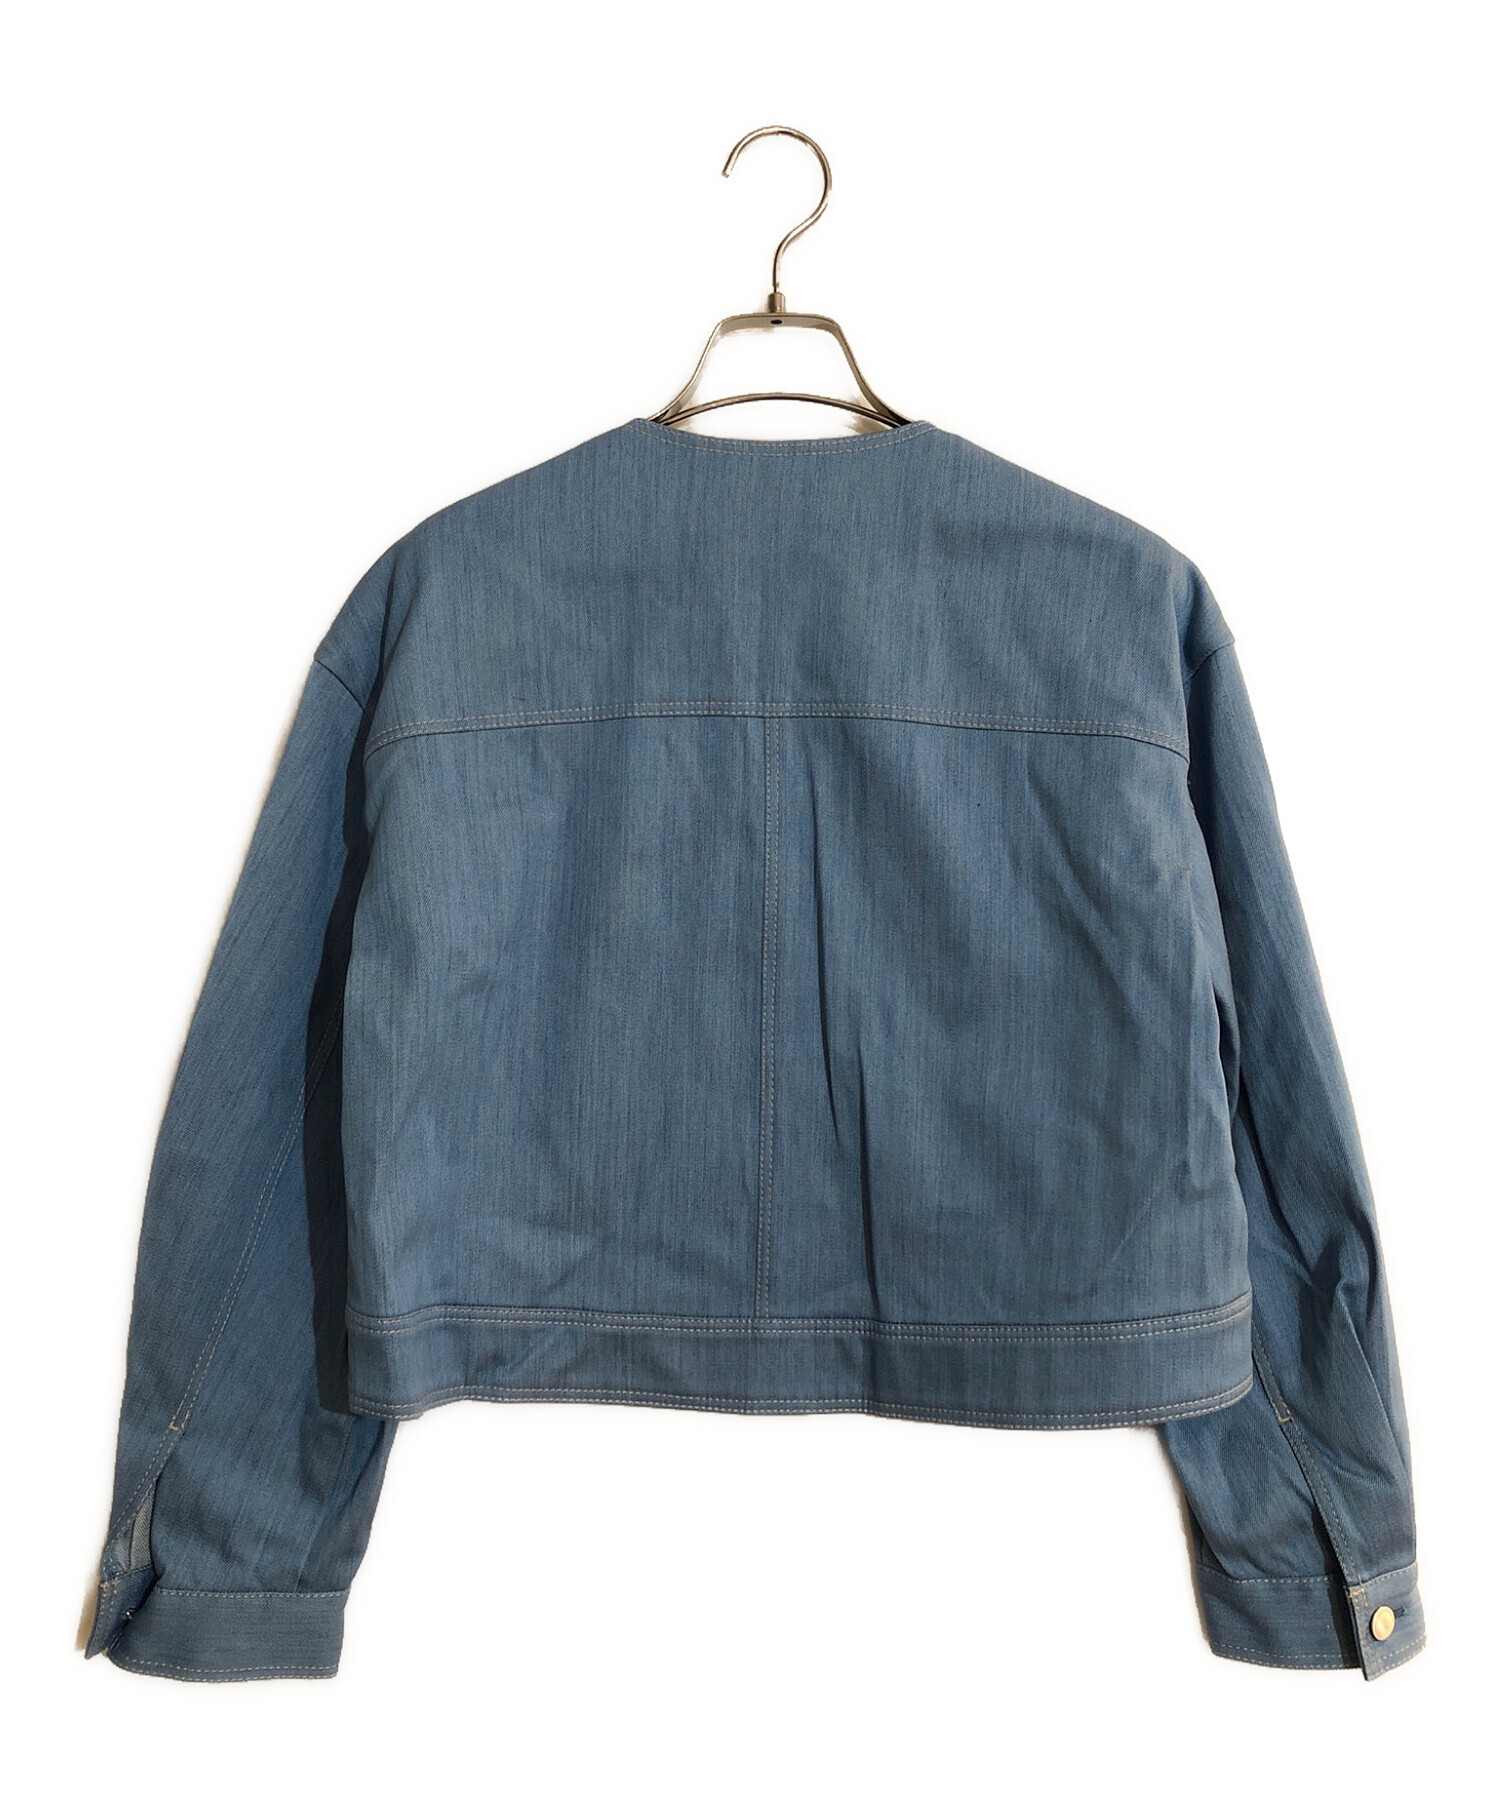 ANAYI (アナイ) デニムライクジャケット ブルー サイズ:38